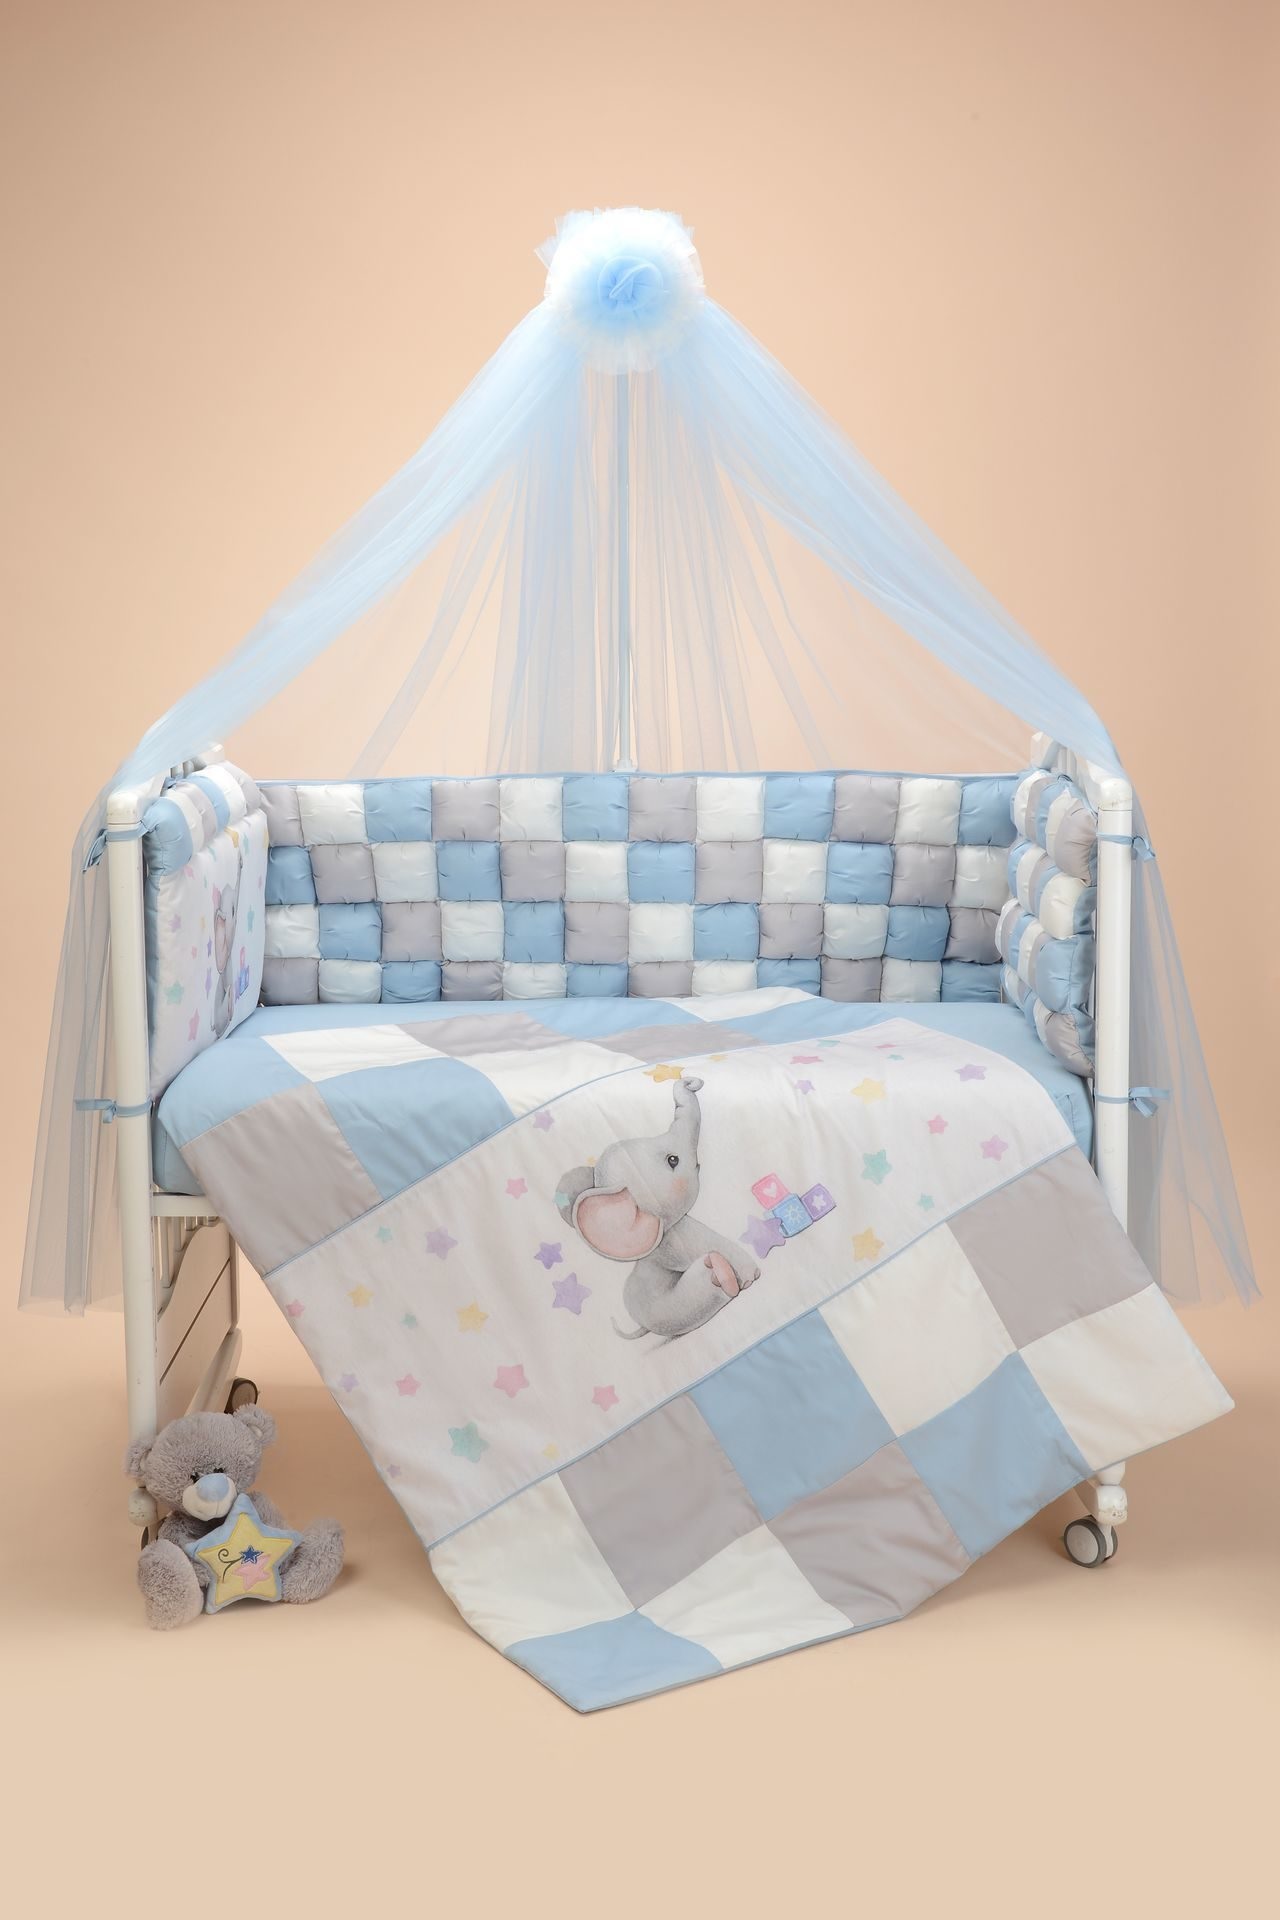 Комплект для детской кровати "Funny friends" голубой